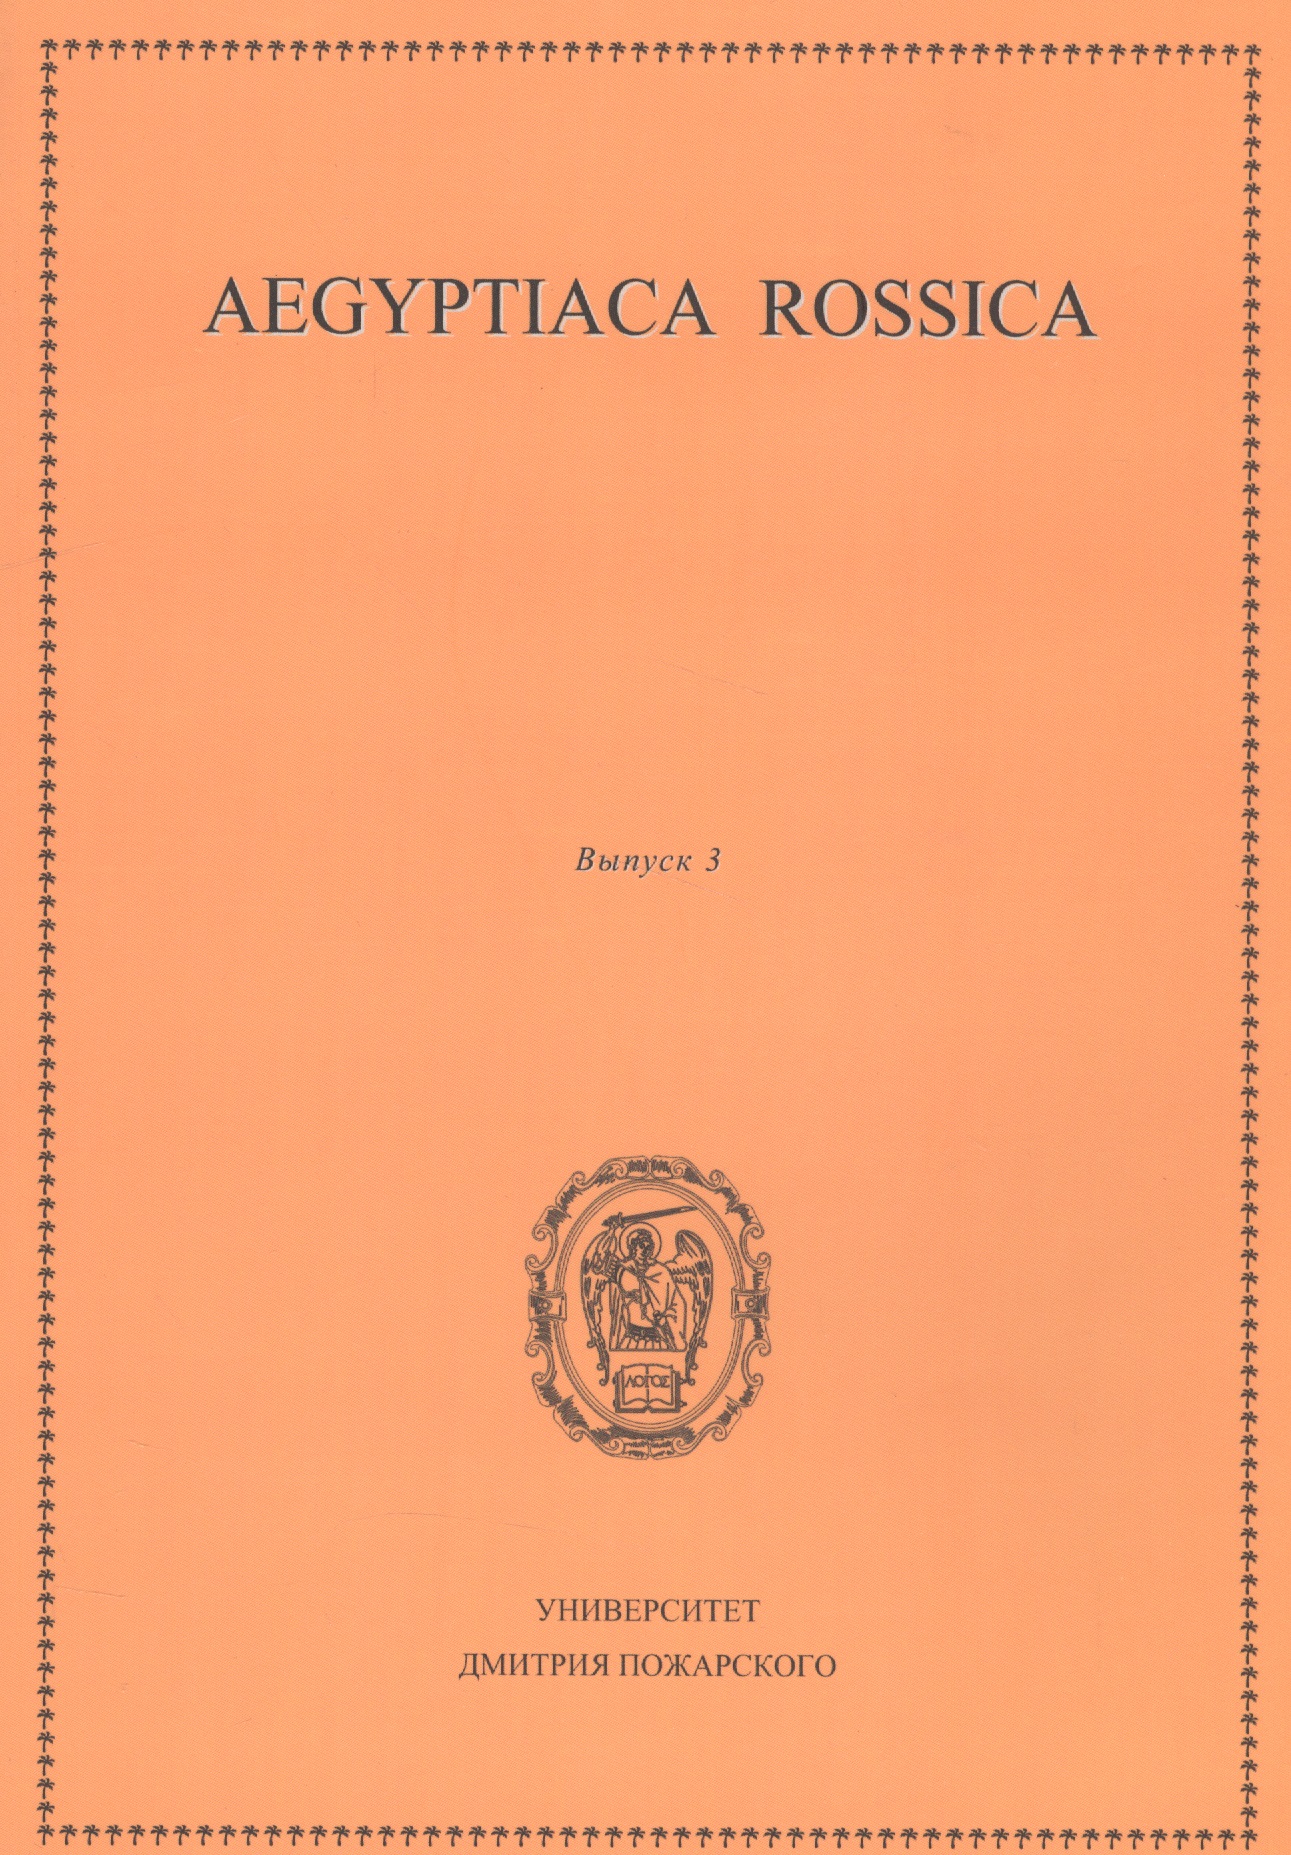 Aegyptiaca Rossica 3 (Египтология. Выпуск 3) под ред чегодаева м а aegyptiaca rossica выпуск 5 сборник статей